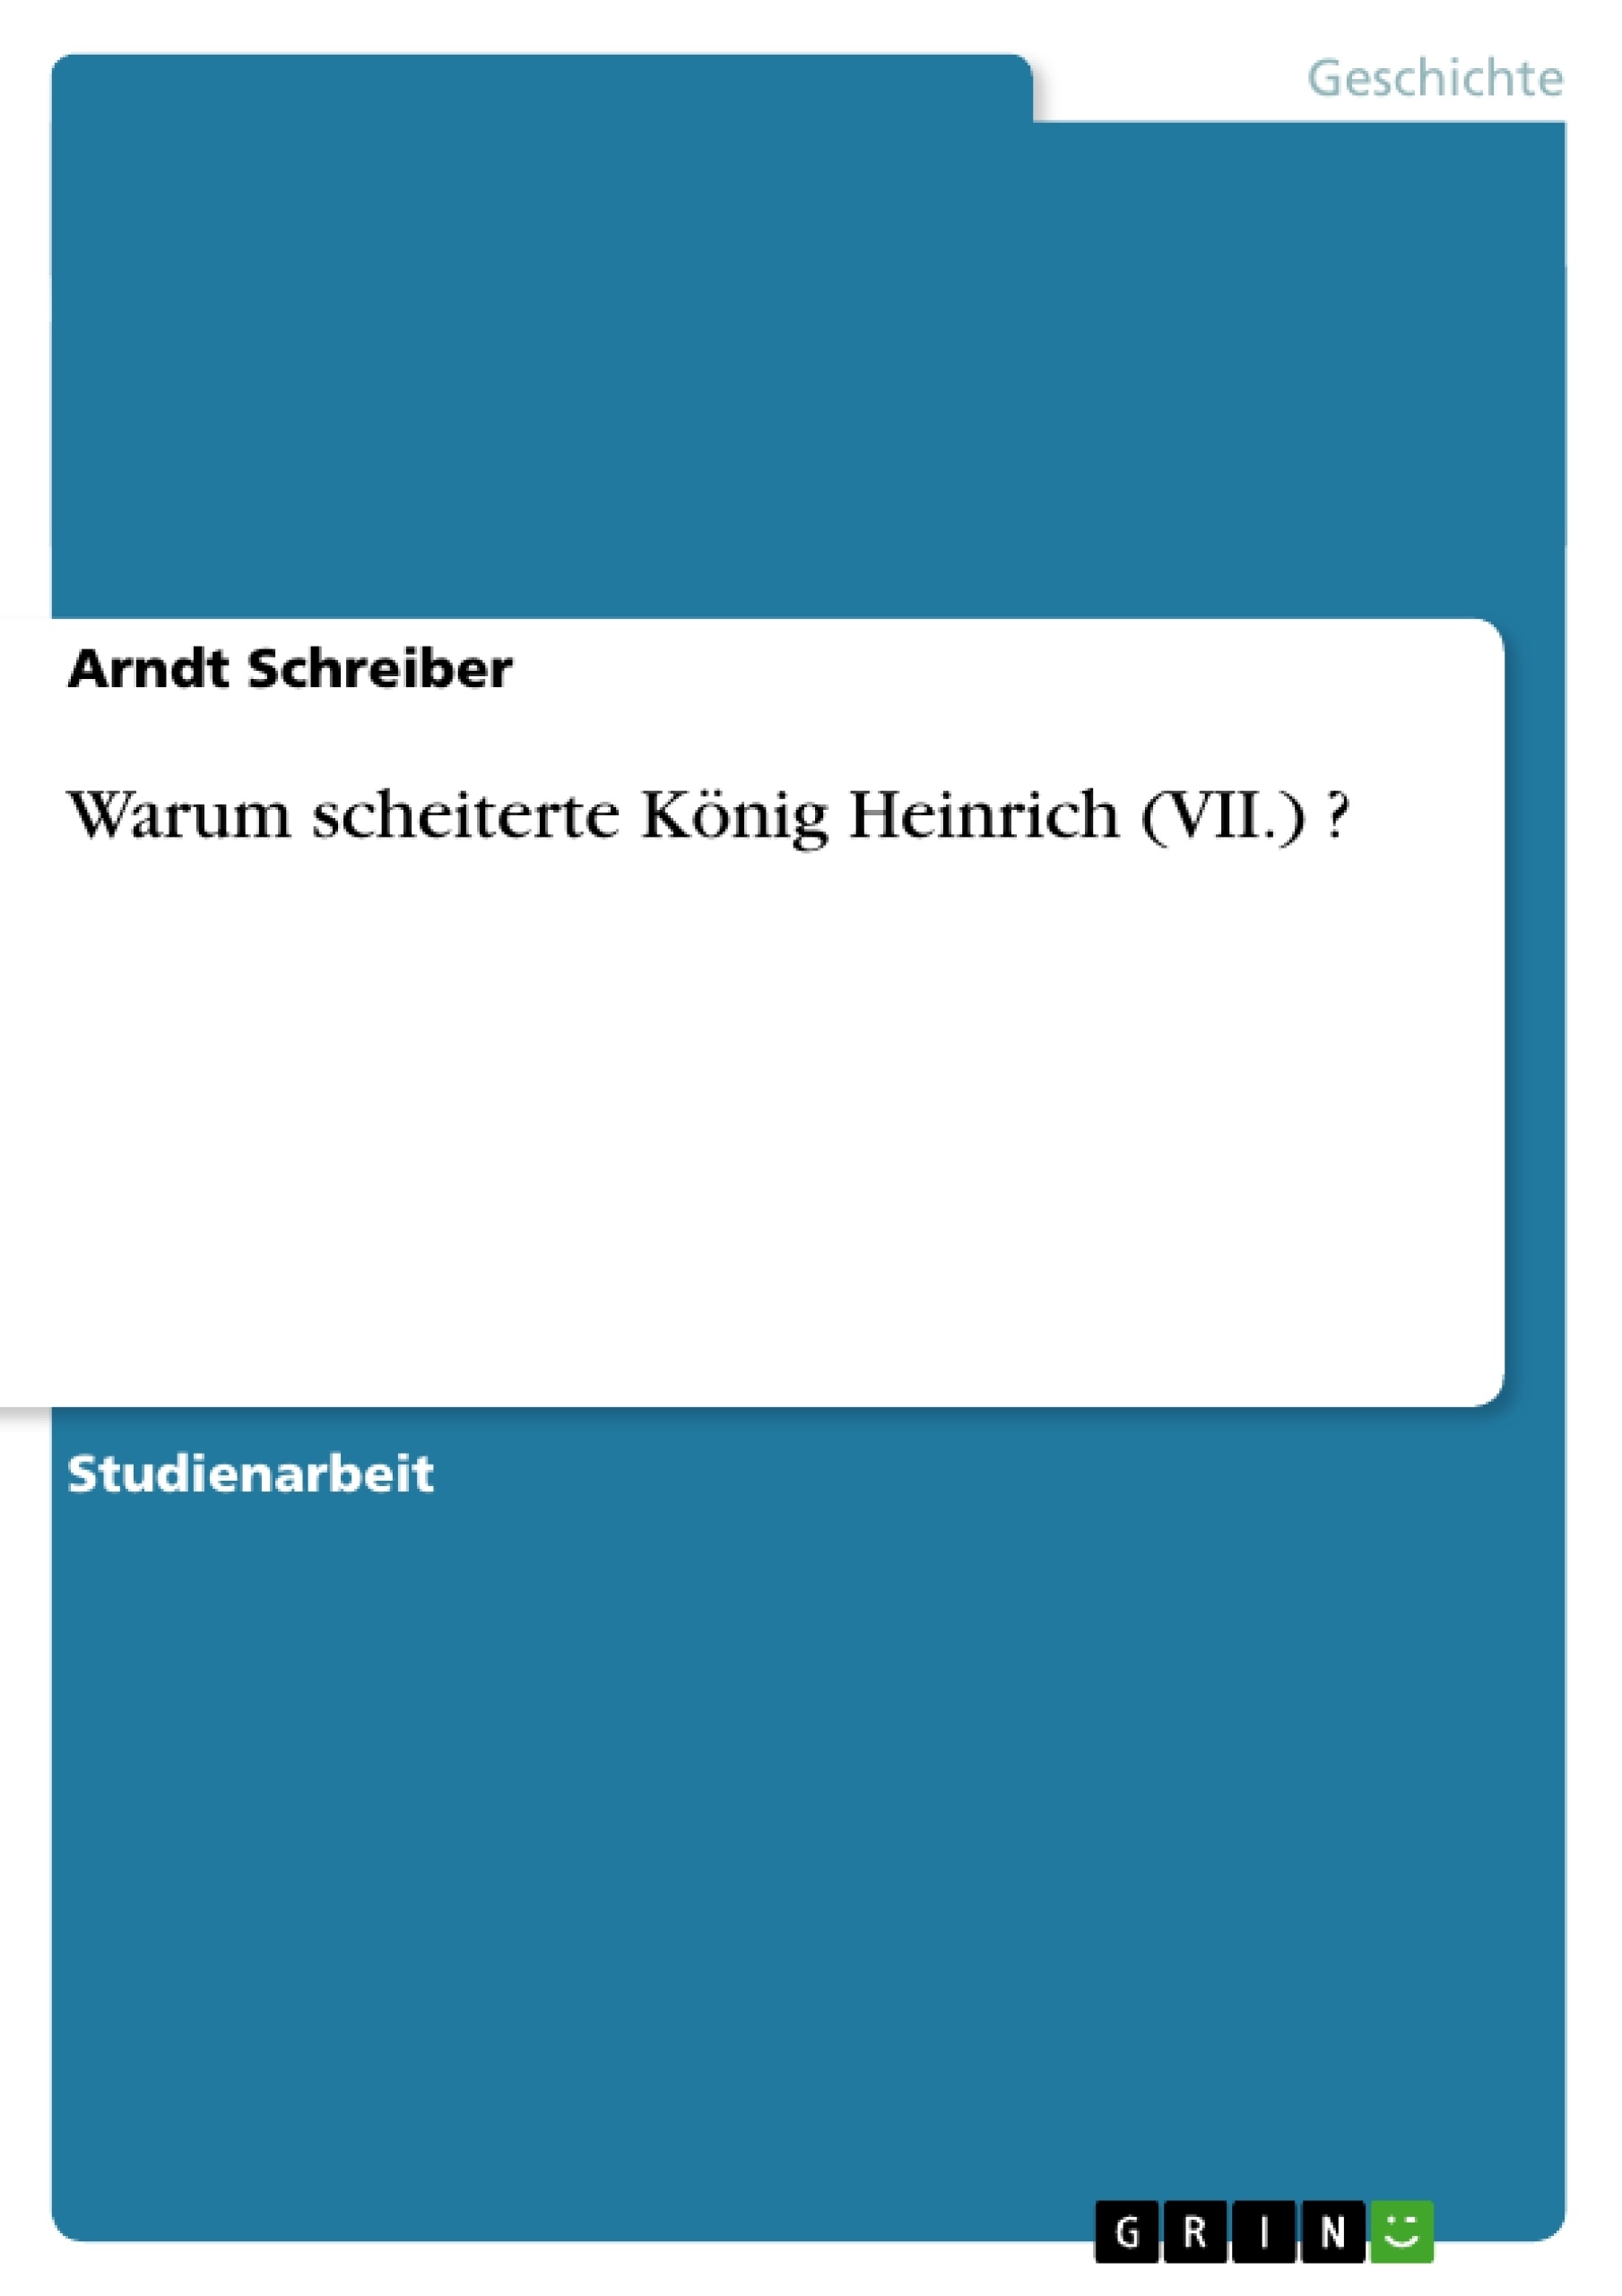 Titre: Warum scheiterte König Heinrich (VII.) ?